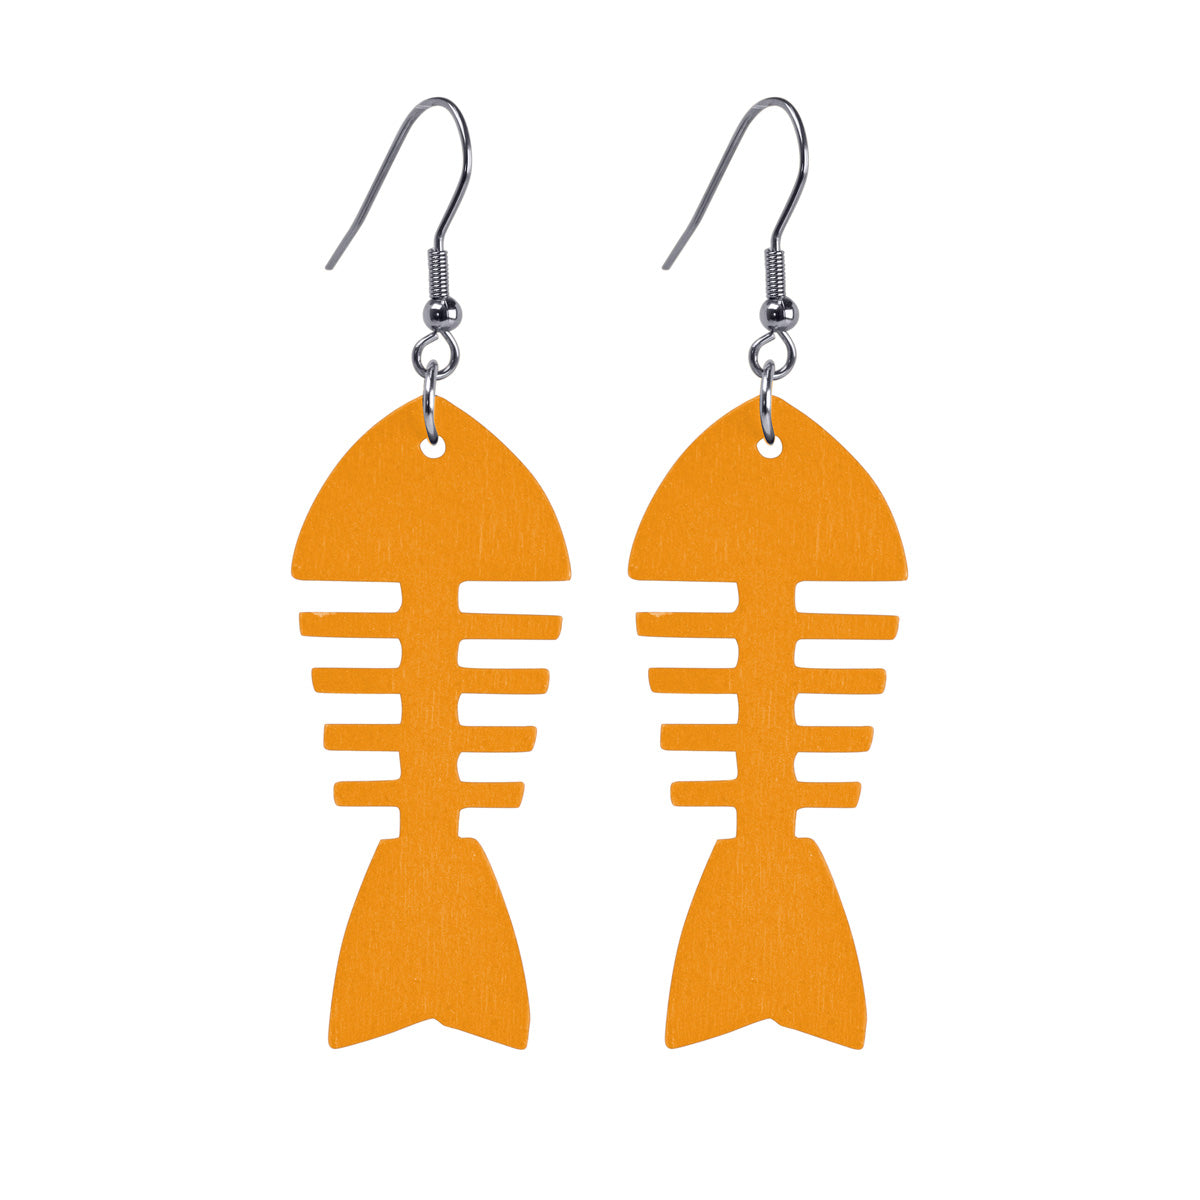 Fish Bone domestic wooden earrings (steel 316L)